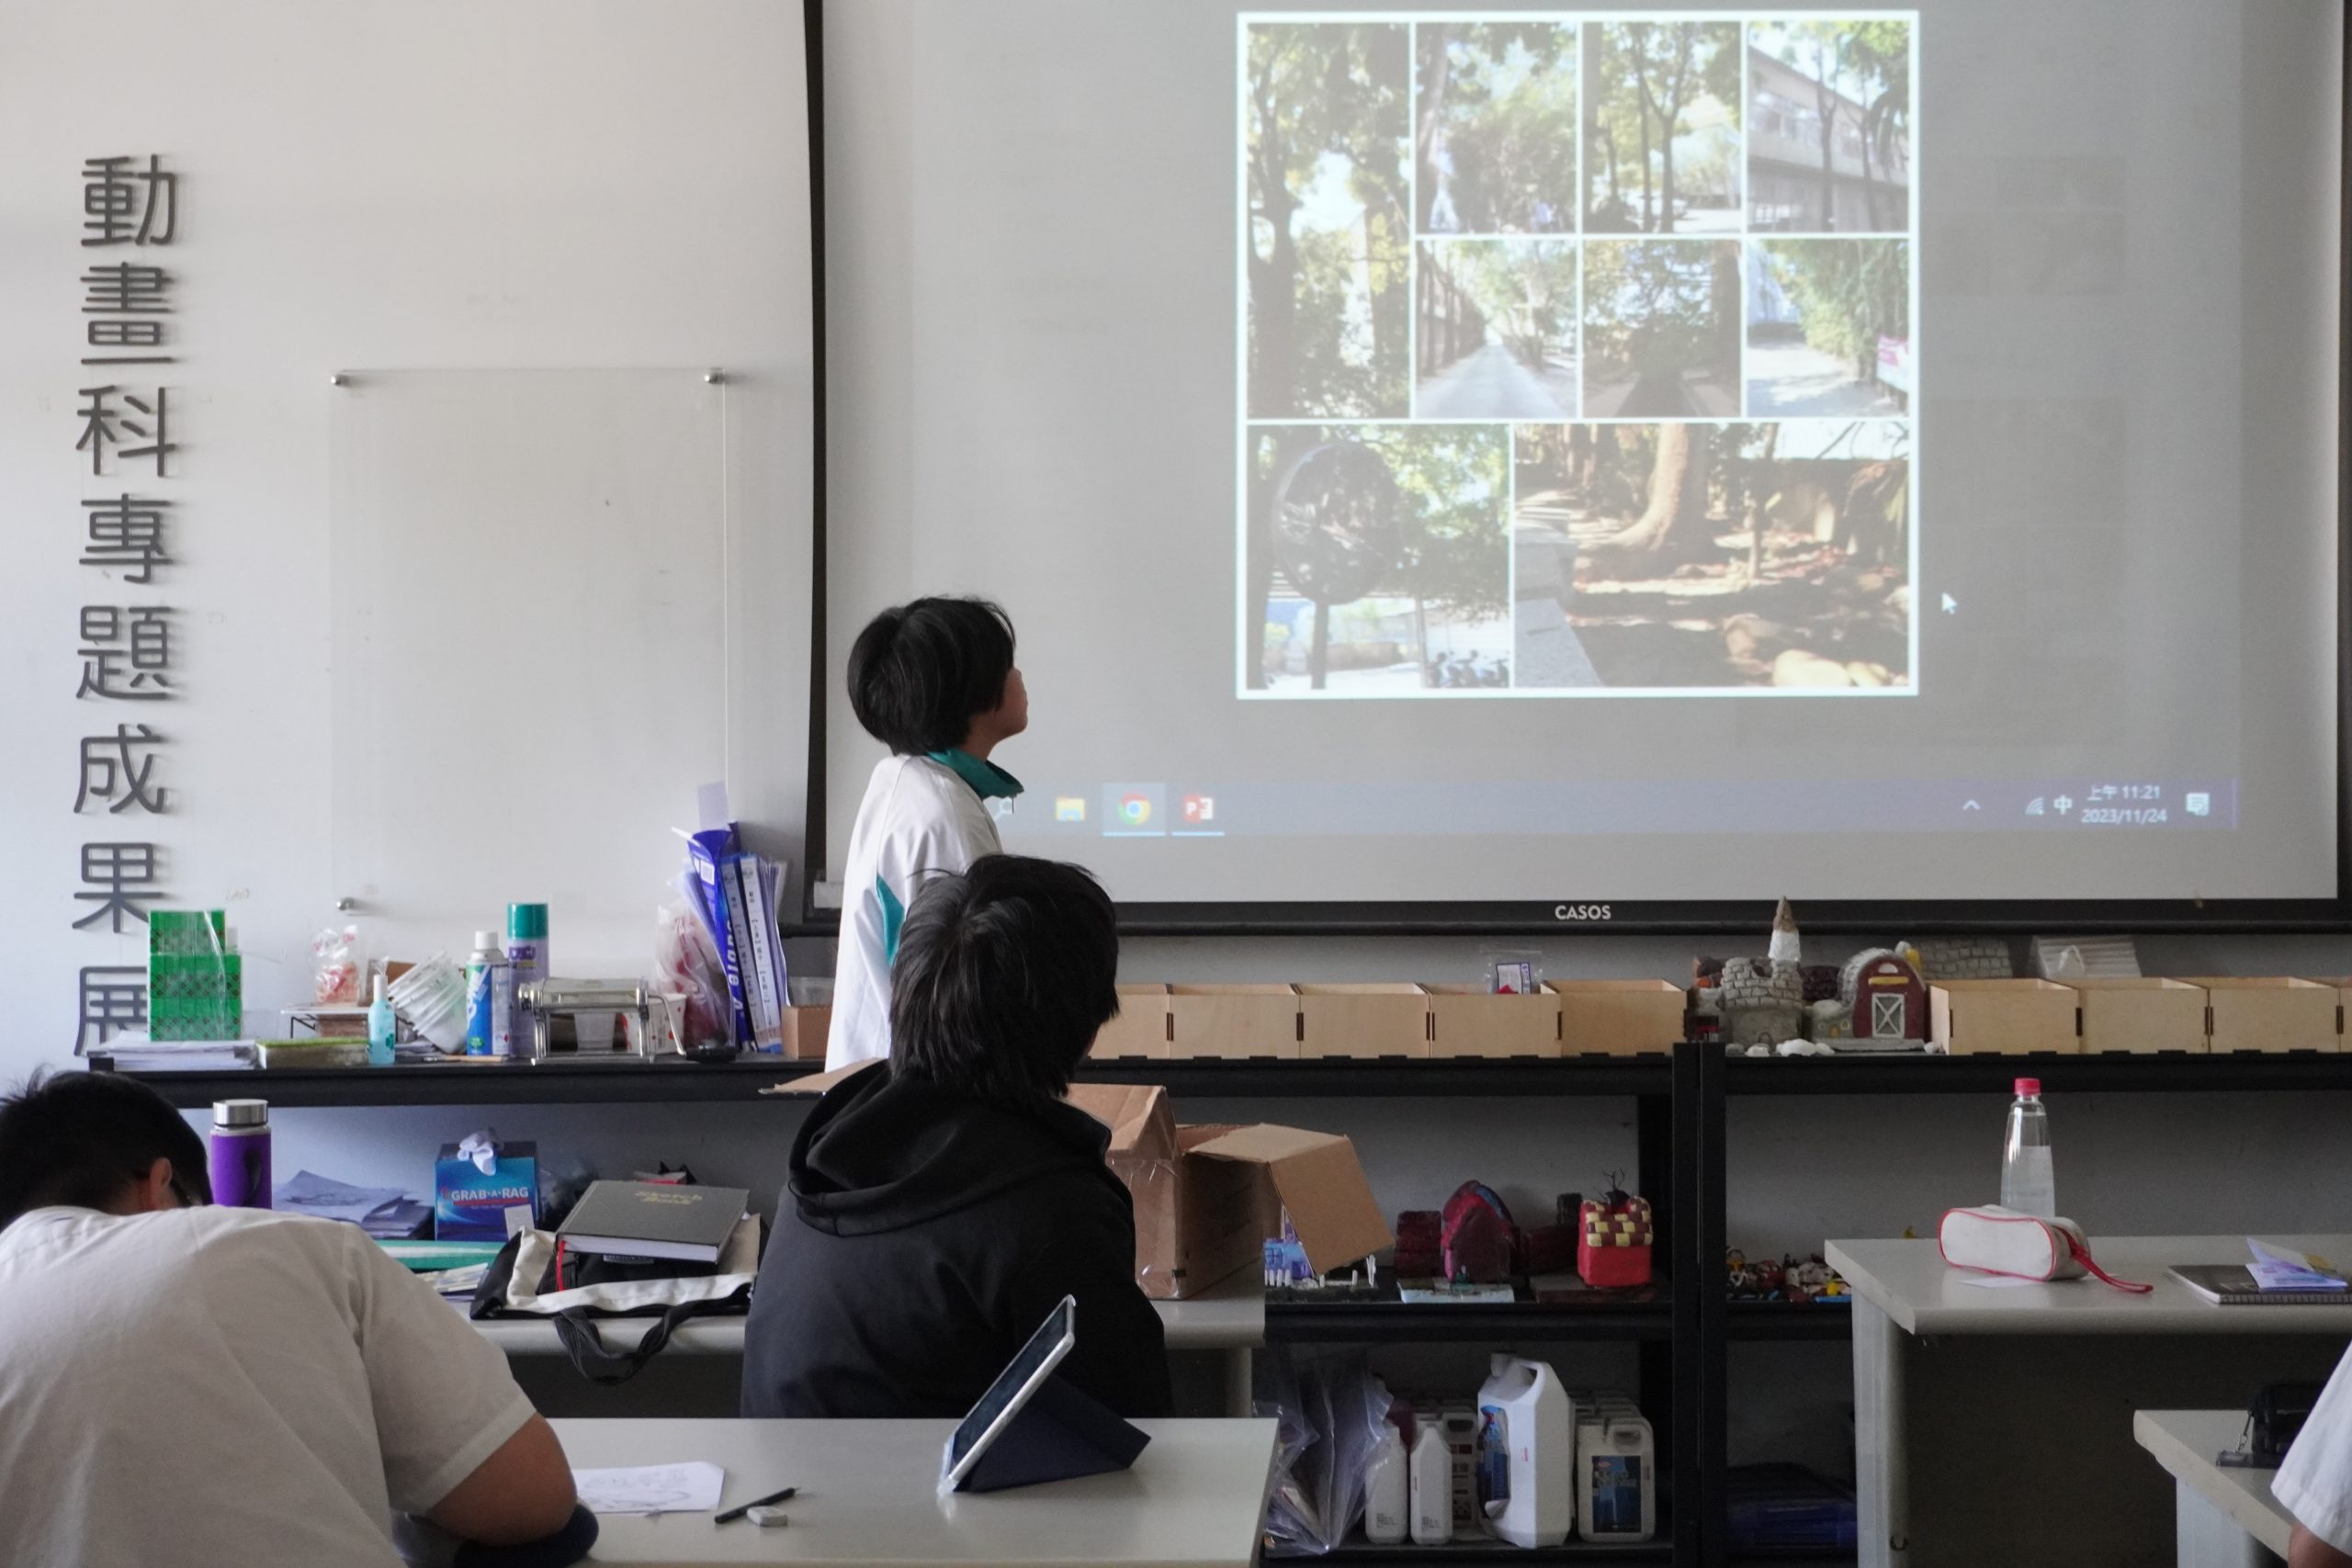 112學年度第一學期於雲林縣私立義峰高級中學施辦自拍拼圖課程實作紀錄系列照片共20張